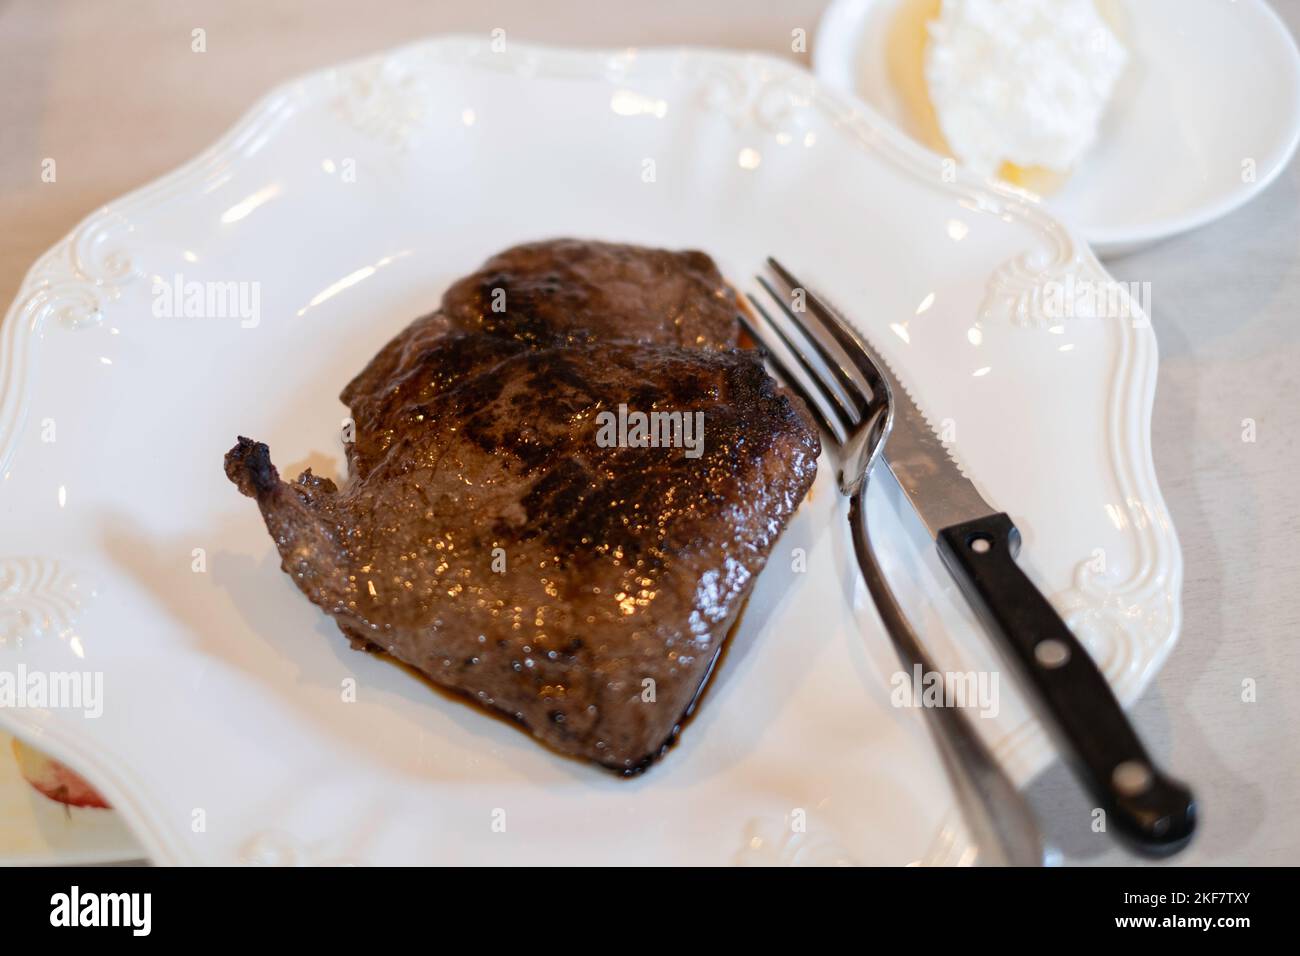 Steak d'aloyau grillé sur une assiette blanche avec des ustensiles de cuisine, un couteau et une fourchette. Banque D'Images